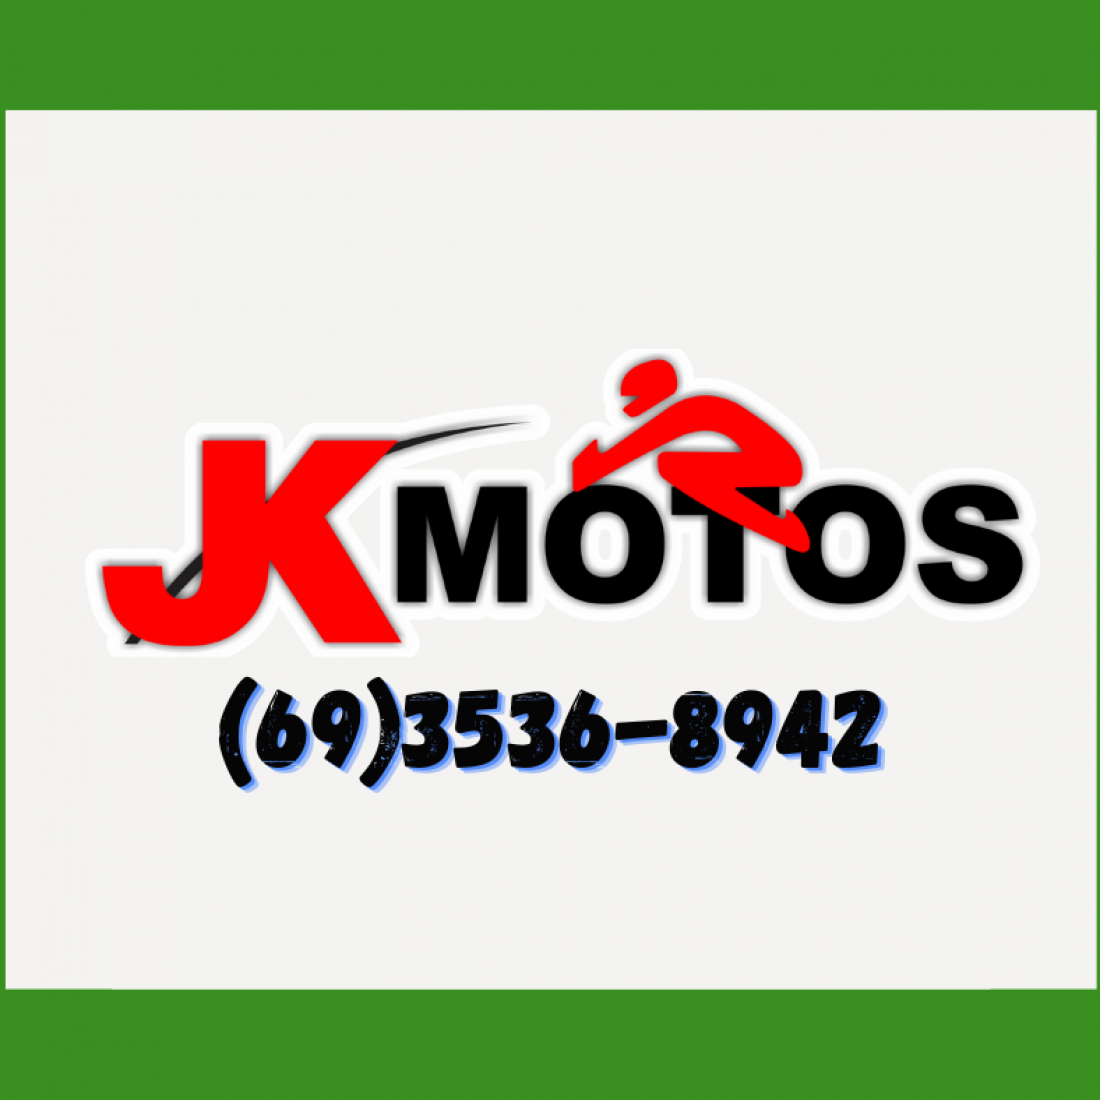 Singeperon firma convênio com JK Motos, de Ariquemes